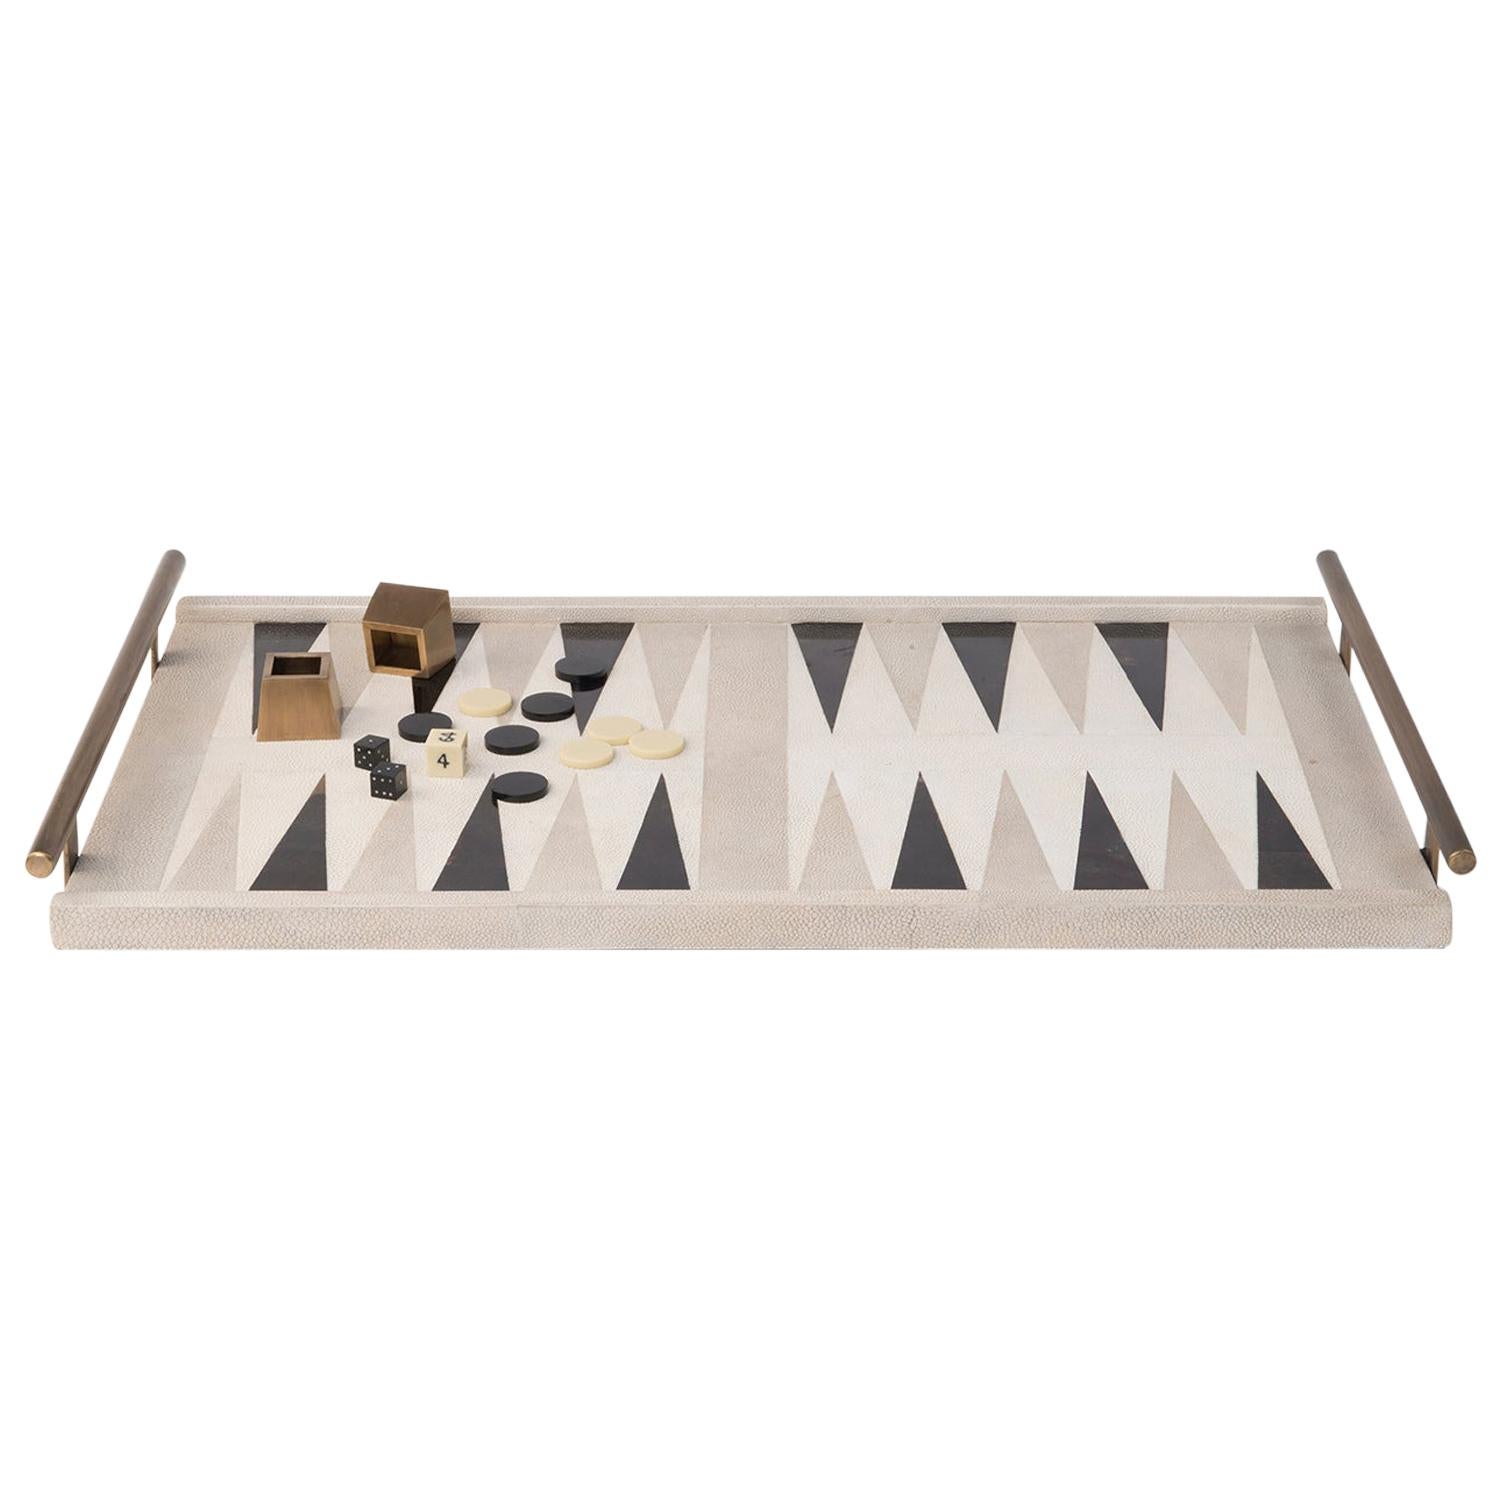 Das Kifu Paris Backgammon Spieltablett ist das ultimative Luxus-Spiel. Akzentuiert mit einer Mischung aus Chagrin, Federschale und Bronze-Patina-Messing wird dieses Stück mit allen Spielteilen in einem Samtbeutel geliefert. Erhältlich in einer